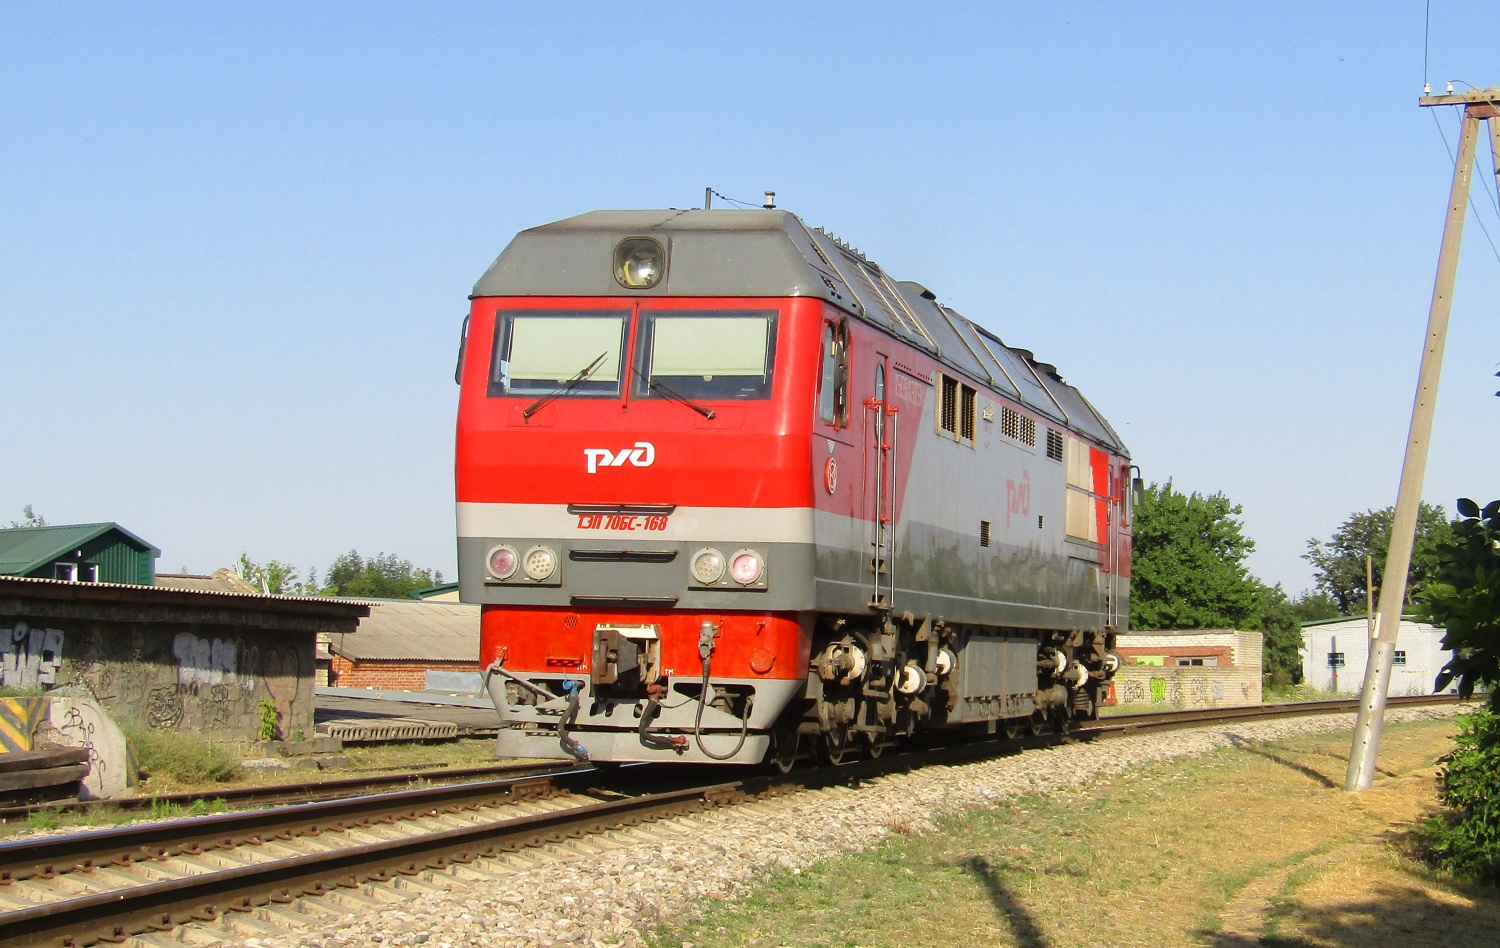 ТЭП70БС-168; North Caucasus Railway — Miscellaneous Photos